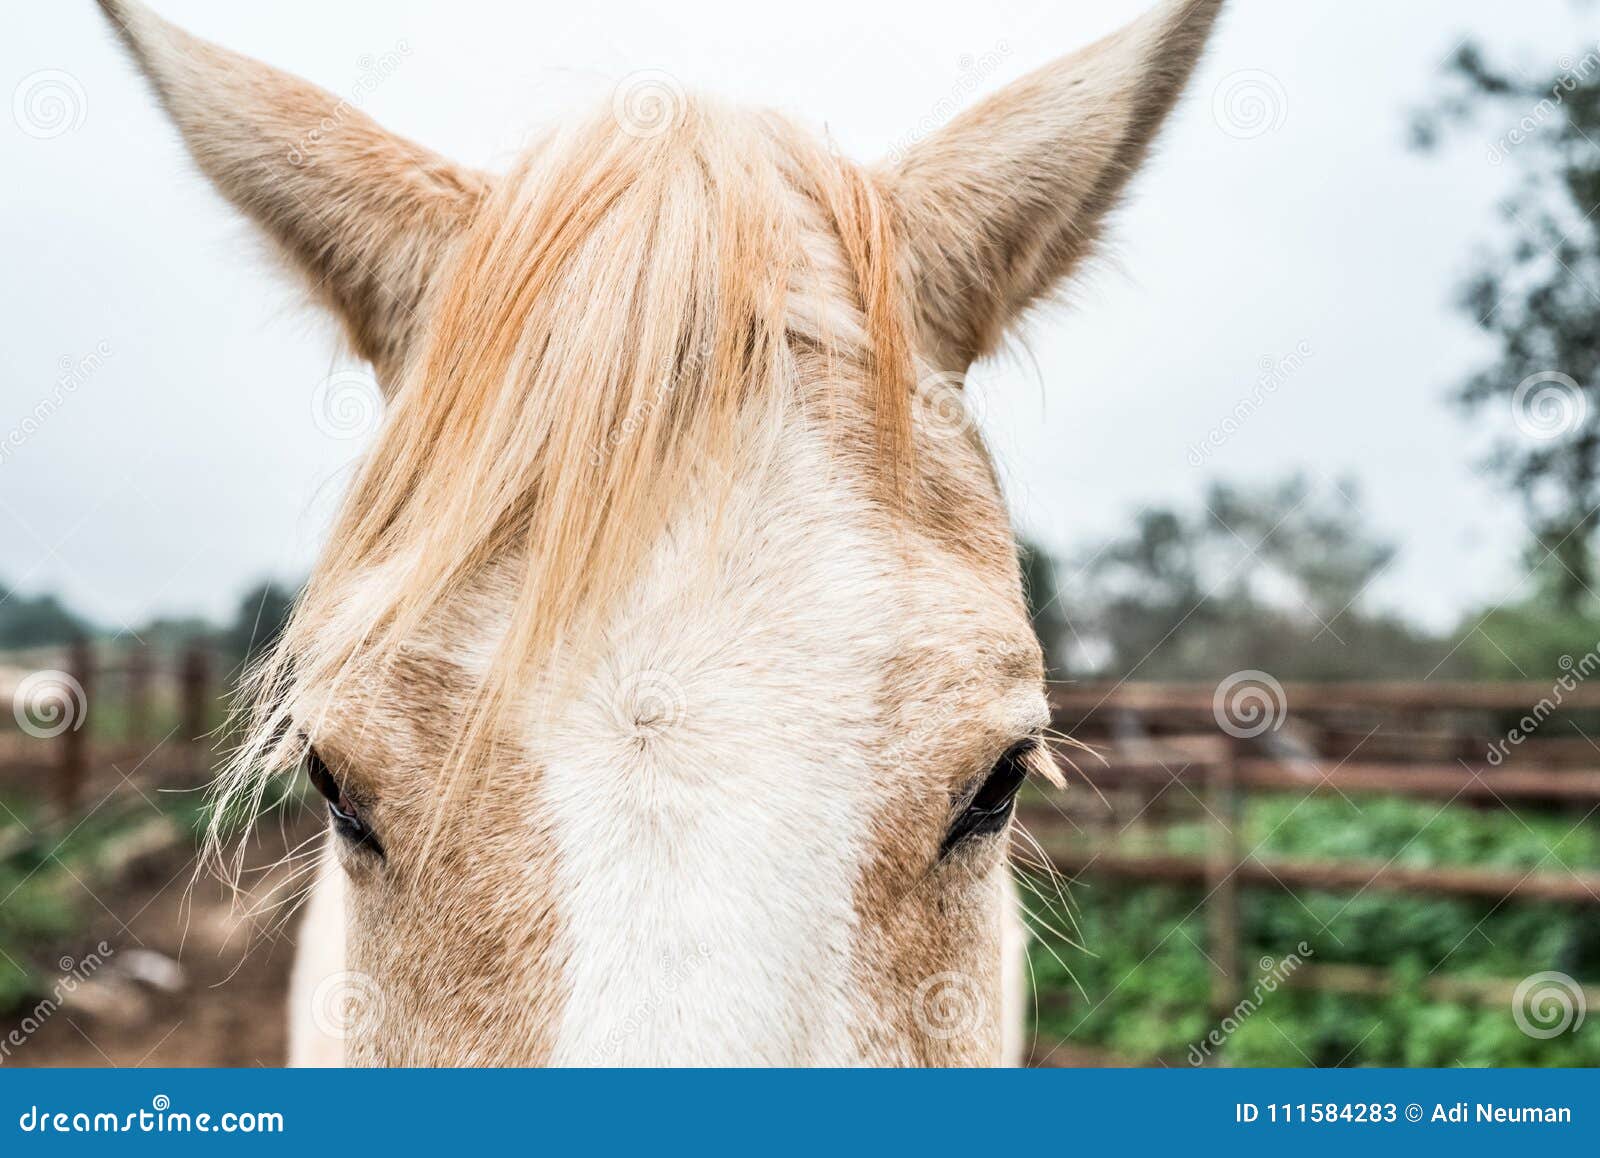 190 Fotos de Stock de Meia Cara Do Cavalo - Fotos de Stock Gratuitas e Sem  Fidelização a partir da Dreamstime